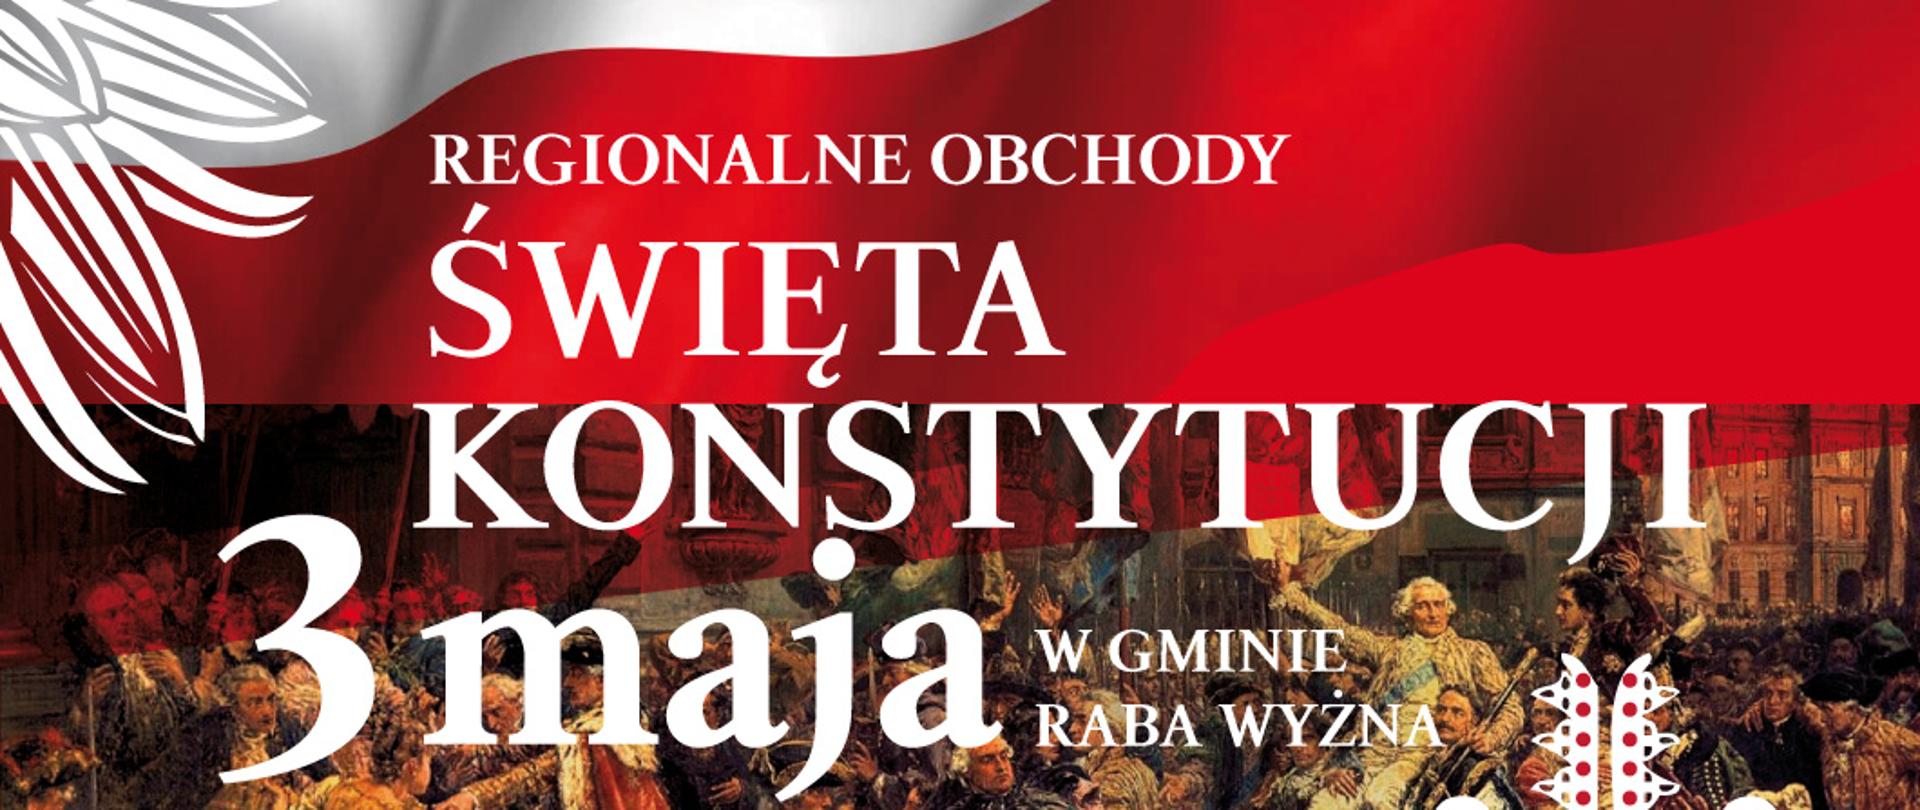 Zdjęcie przedstawia plakat z polską flagą oraz napis Regionalne Obchody Święta Konstytucji 3 Maja w Gminie Raba Wyżna
Wójt Gminy Raba Wyżna, Gminny Ośrodek Kultury w Rabie Wyżnej oraz Społeczność Rokicin Podhalańskich zapraszają Mieszkańców Gminy Raba Wyżna na uroczystości poświęcone 233. rocznicy uchwalenia Konstytucji 3 Maja 1791-2024, które odbędą się 30 kwietnia (wtorek) w Rokicinach Podhalańskich. oraz przebieg uroczystości.